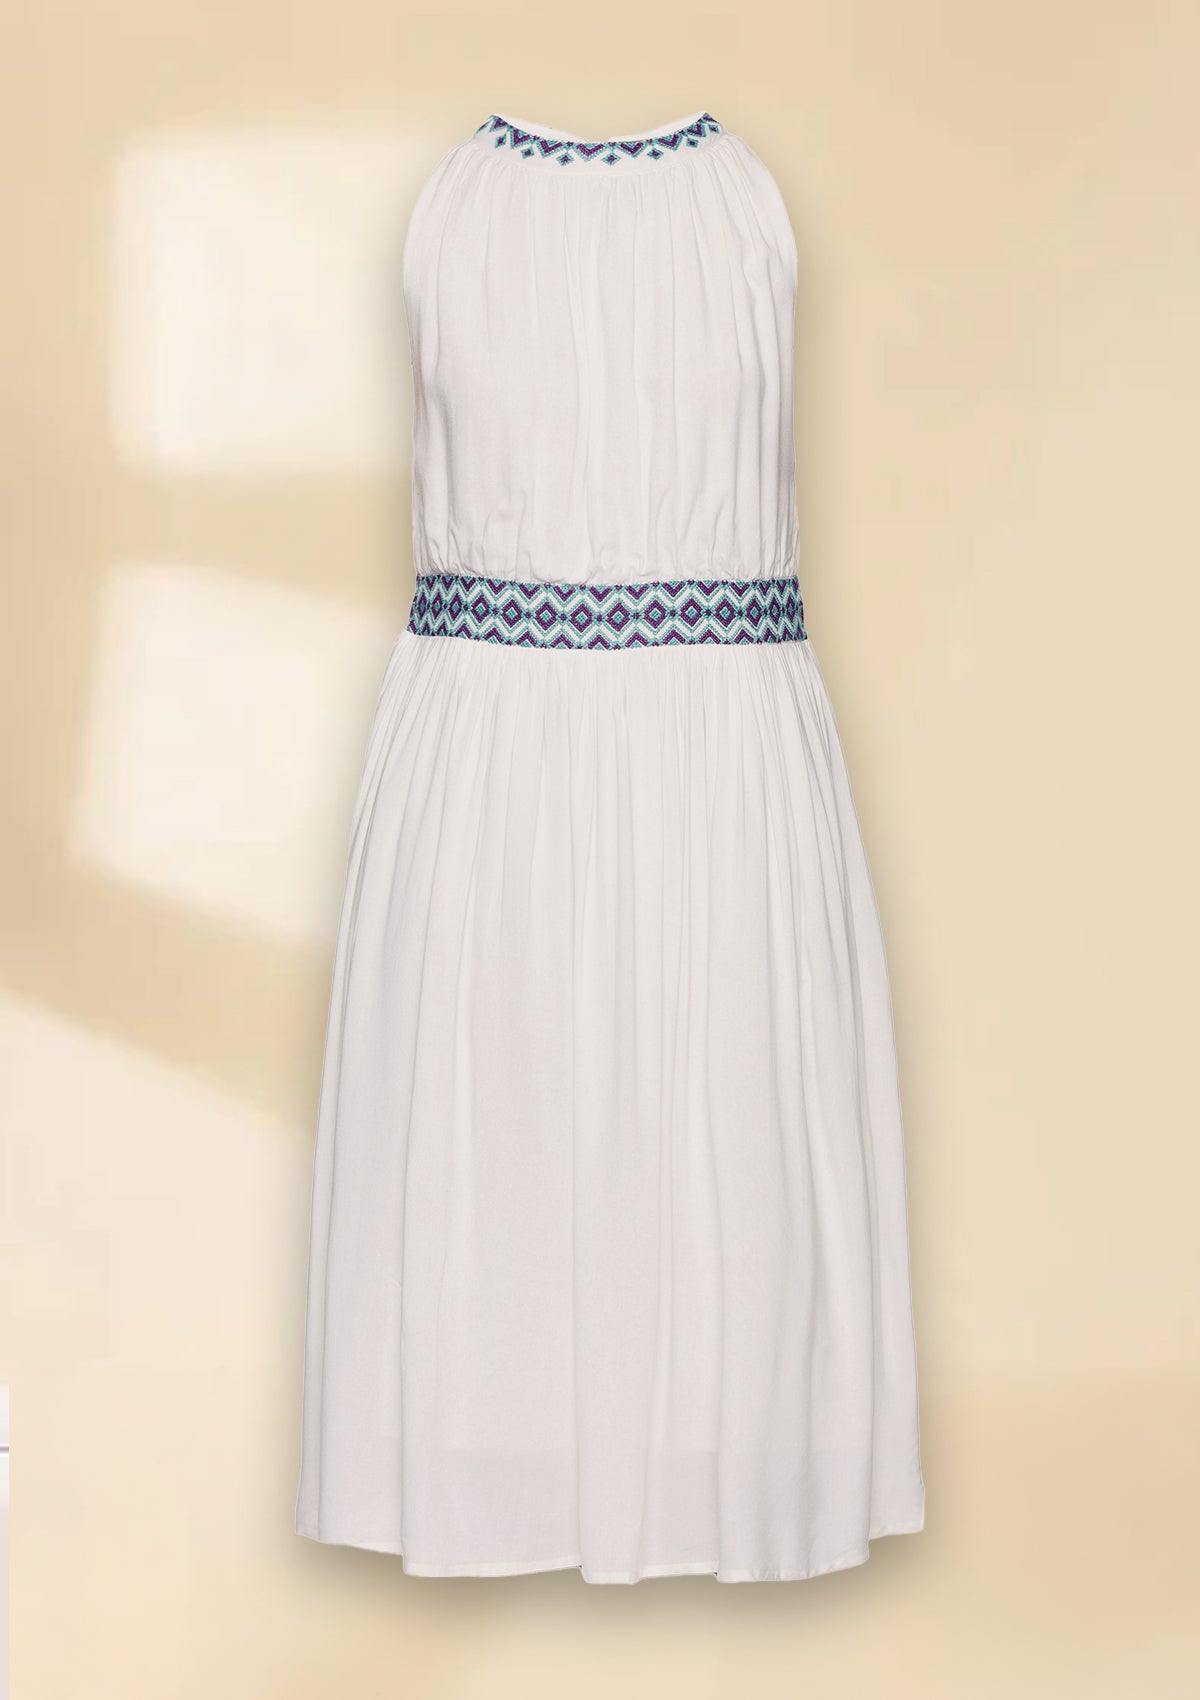 Celeste - White Rayon Dress